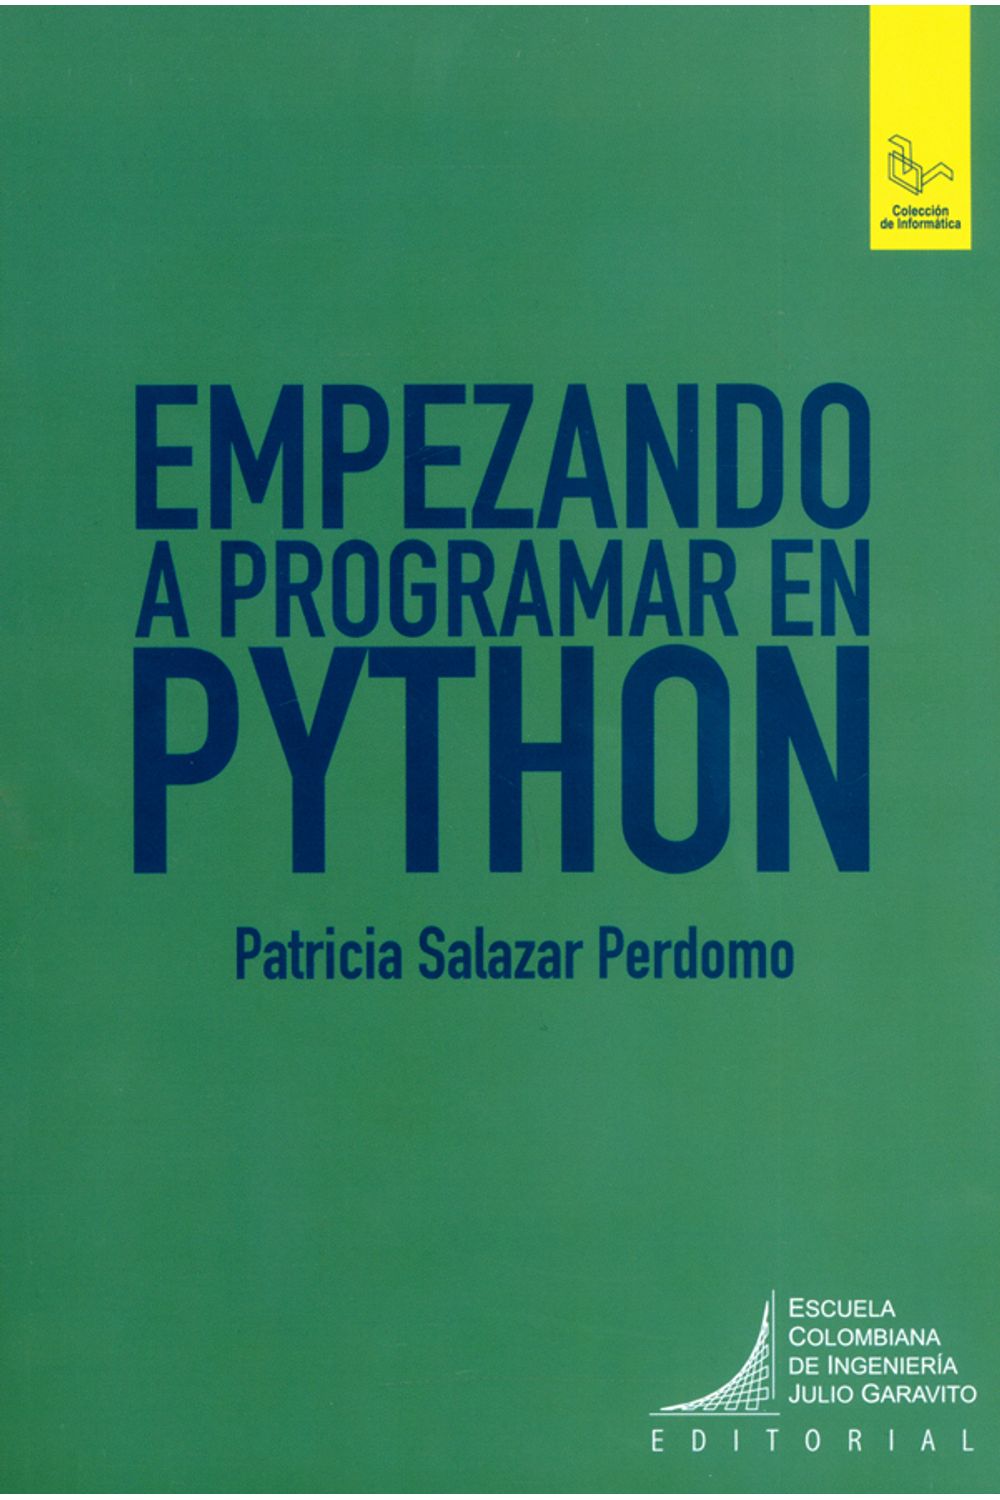 empezando-a-programar-en-python-9789588726359-ecii